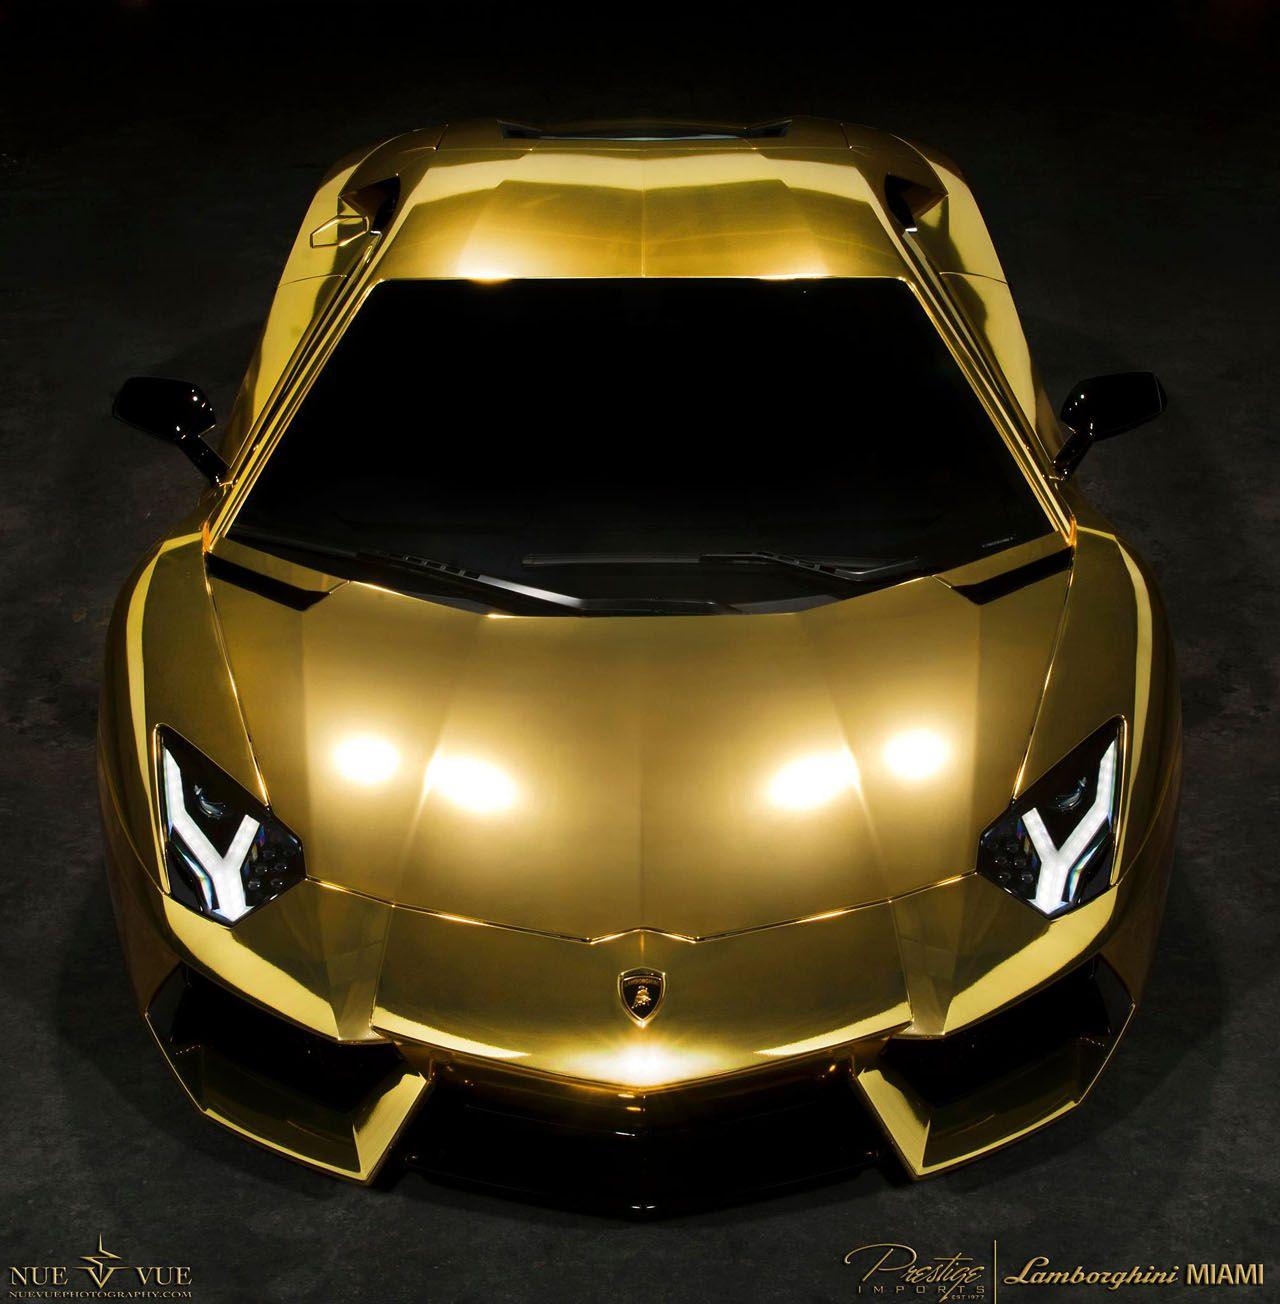 Ferrari vàng hình nền: Nếu bạn đam mê siêu xe Ferrari và muốn trang trí cho thiết bị của mình một hình nền đẹp mắt, hãy xem hình ảnh về Ferrari vàng. Với âm hưởng của sự sang trọng và tốc độ, xe Ferrari vàng là một điểm nhấn đáng chú ý cho màn hình của bạn.